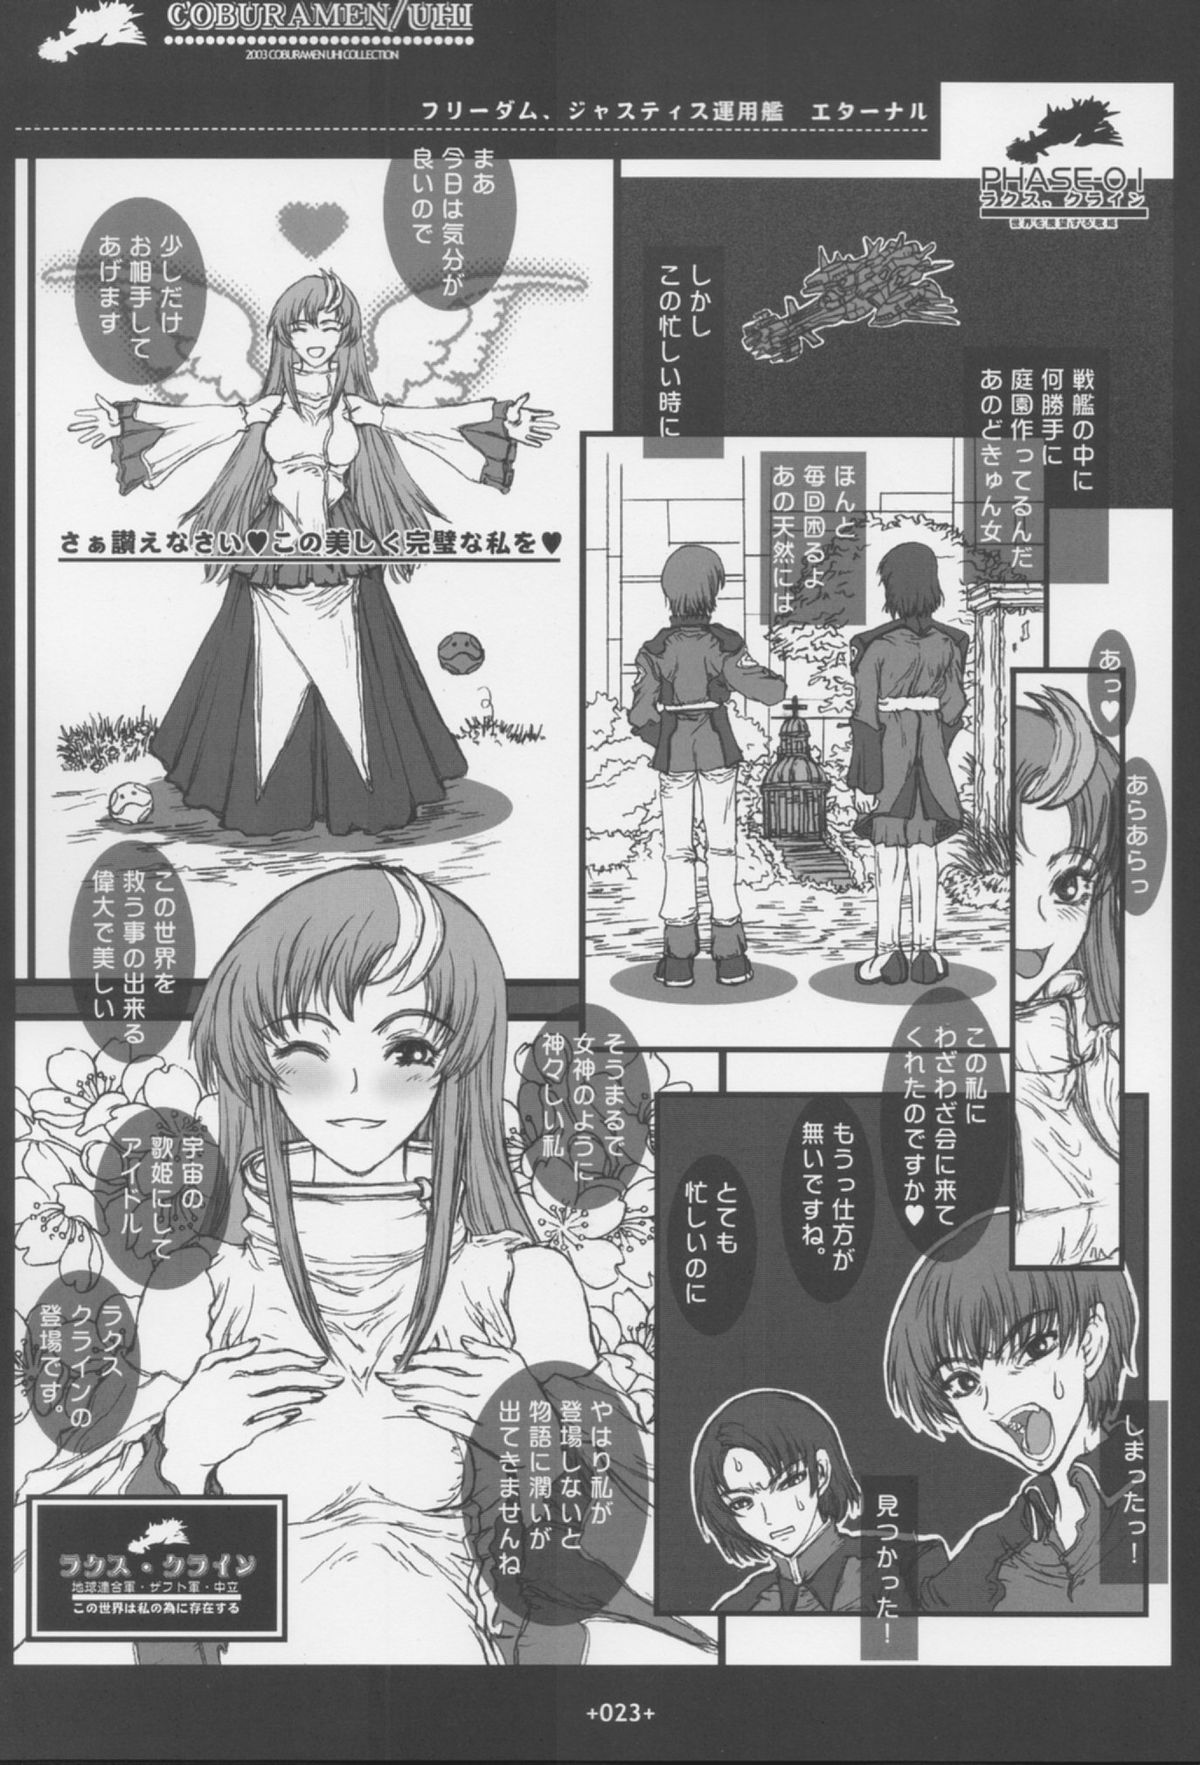 [Coburamenman (Uhhii)] GS (Gundam Seed) page 24 full